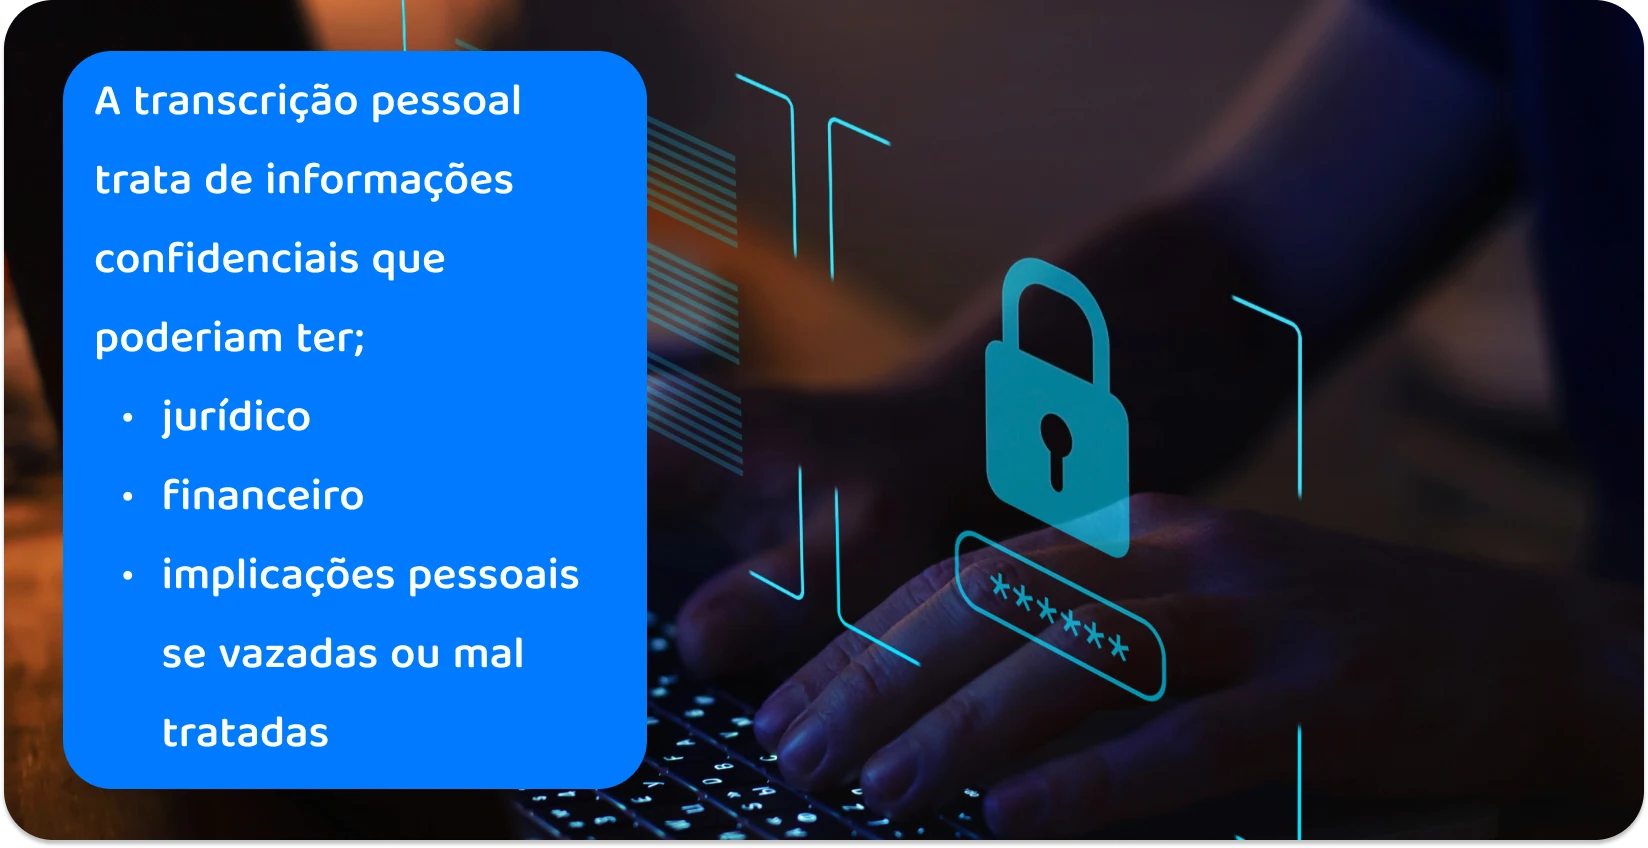 Mãos digitando em um teclado com um ícone de cadeado digital, ilustrando práticas seguras de transcrição pessoal para informações confidenciais.